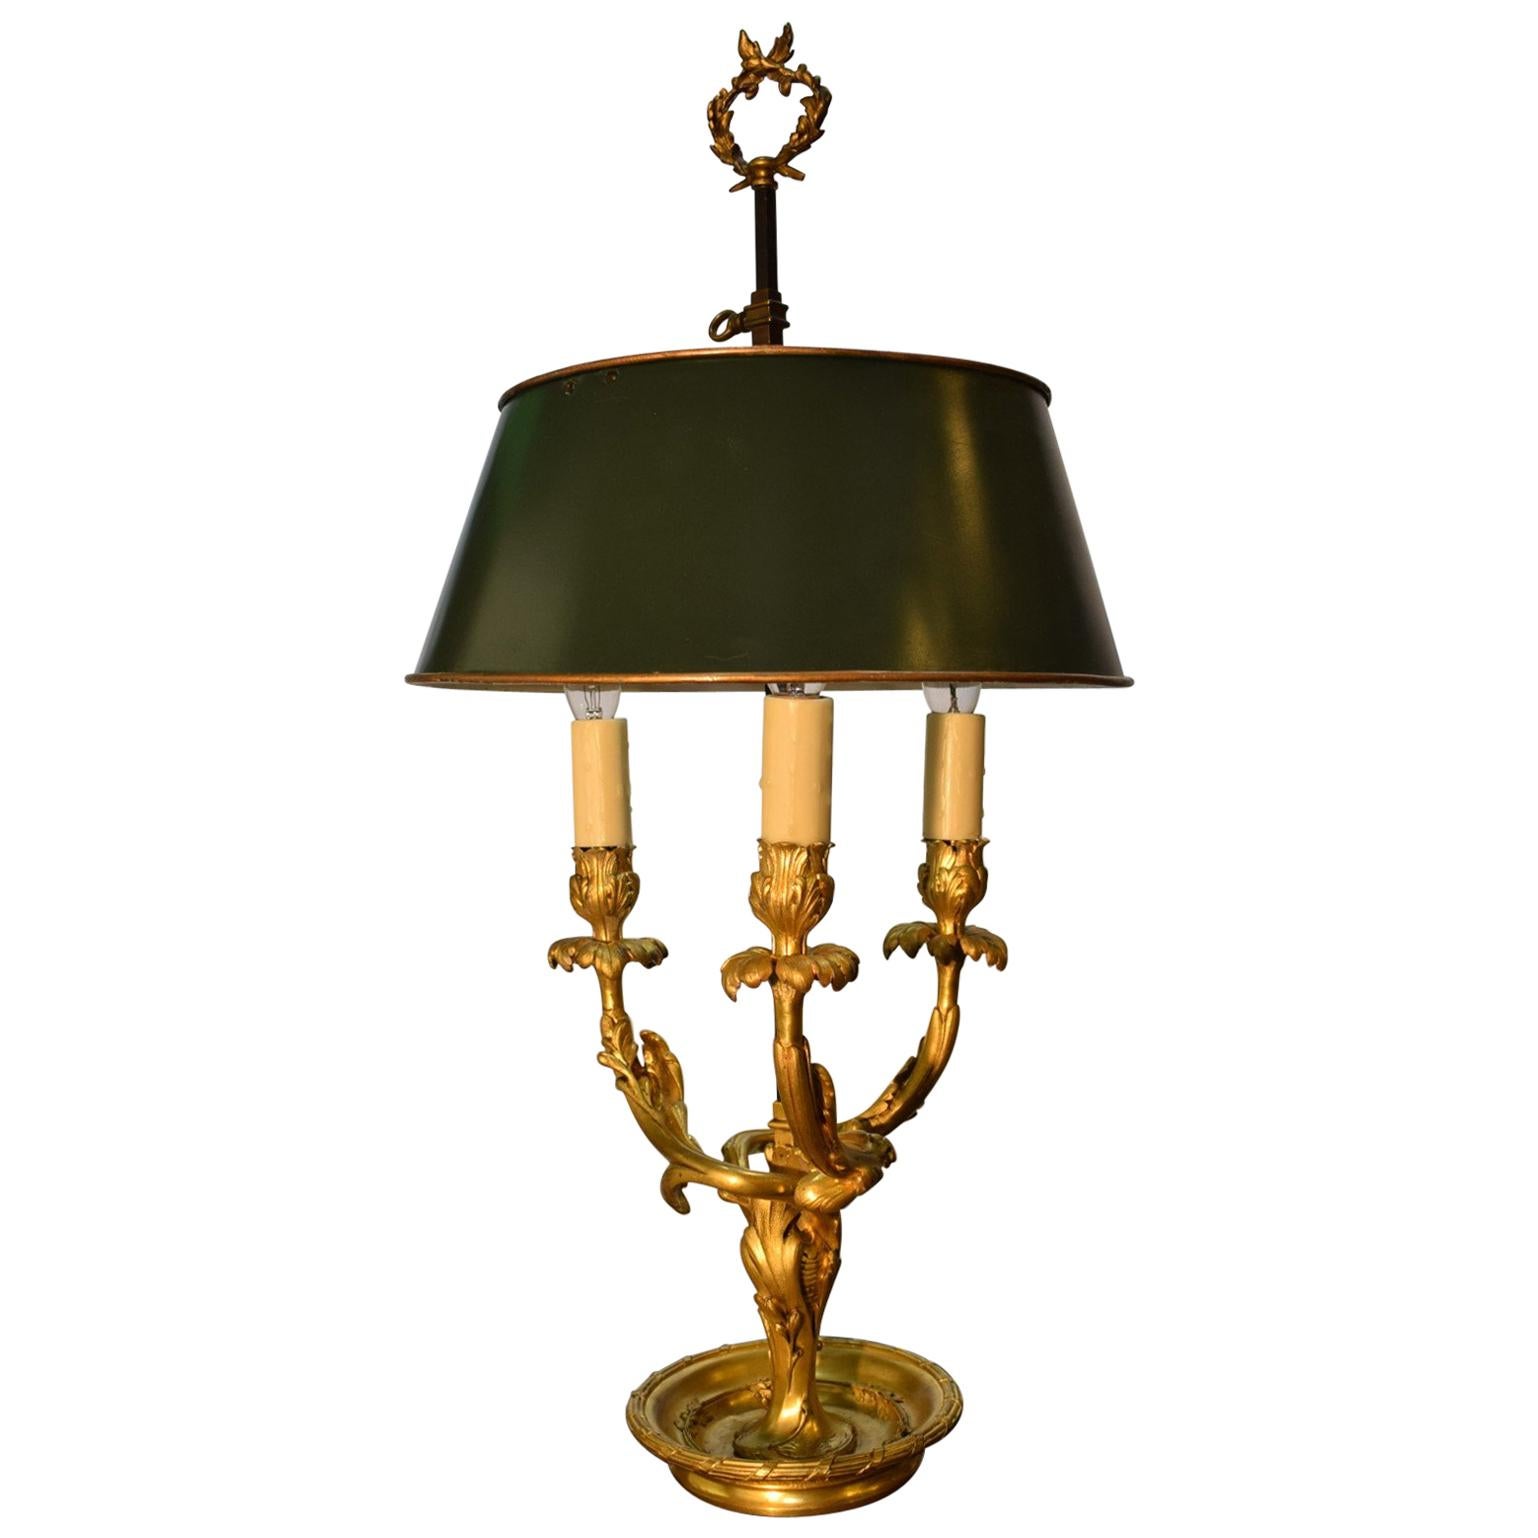 Antique Bouilotte Lamp For Sale